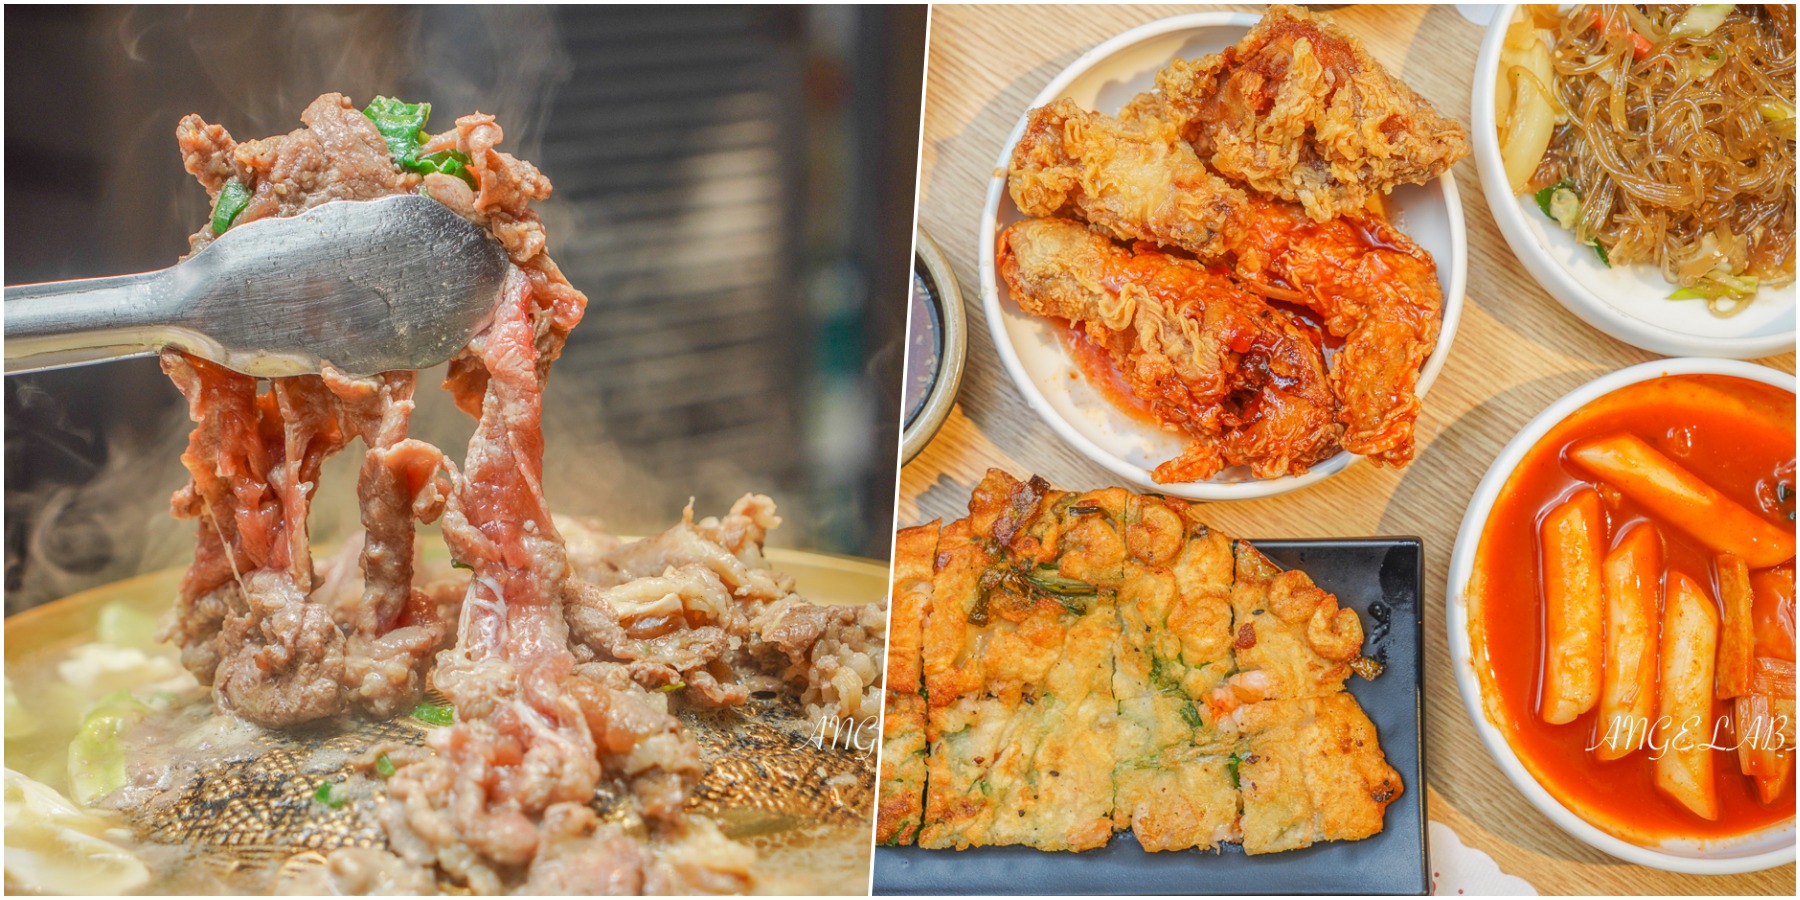 台北必吃10家人氣平價韓國料理、韓國美食推薦 @梅格(Angelababy)享樂日記